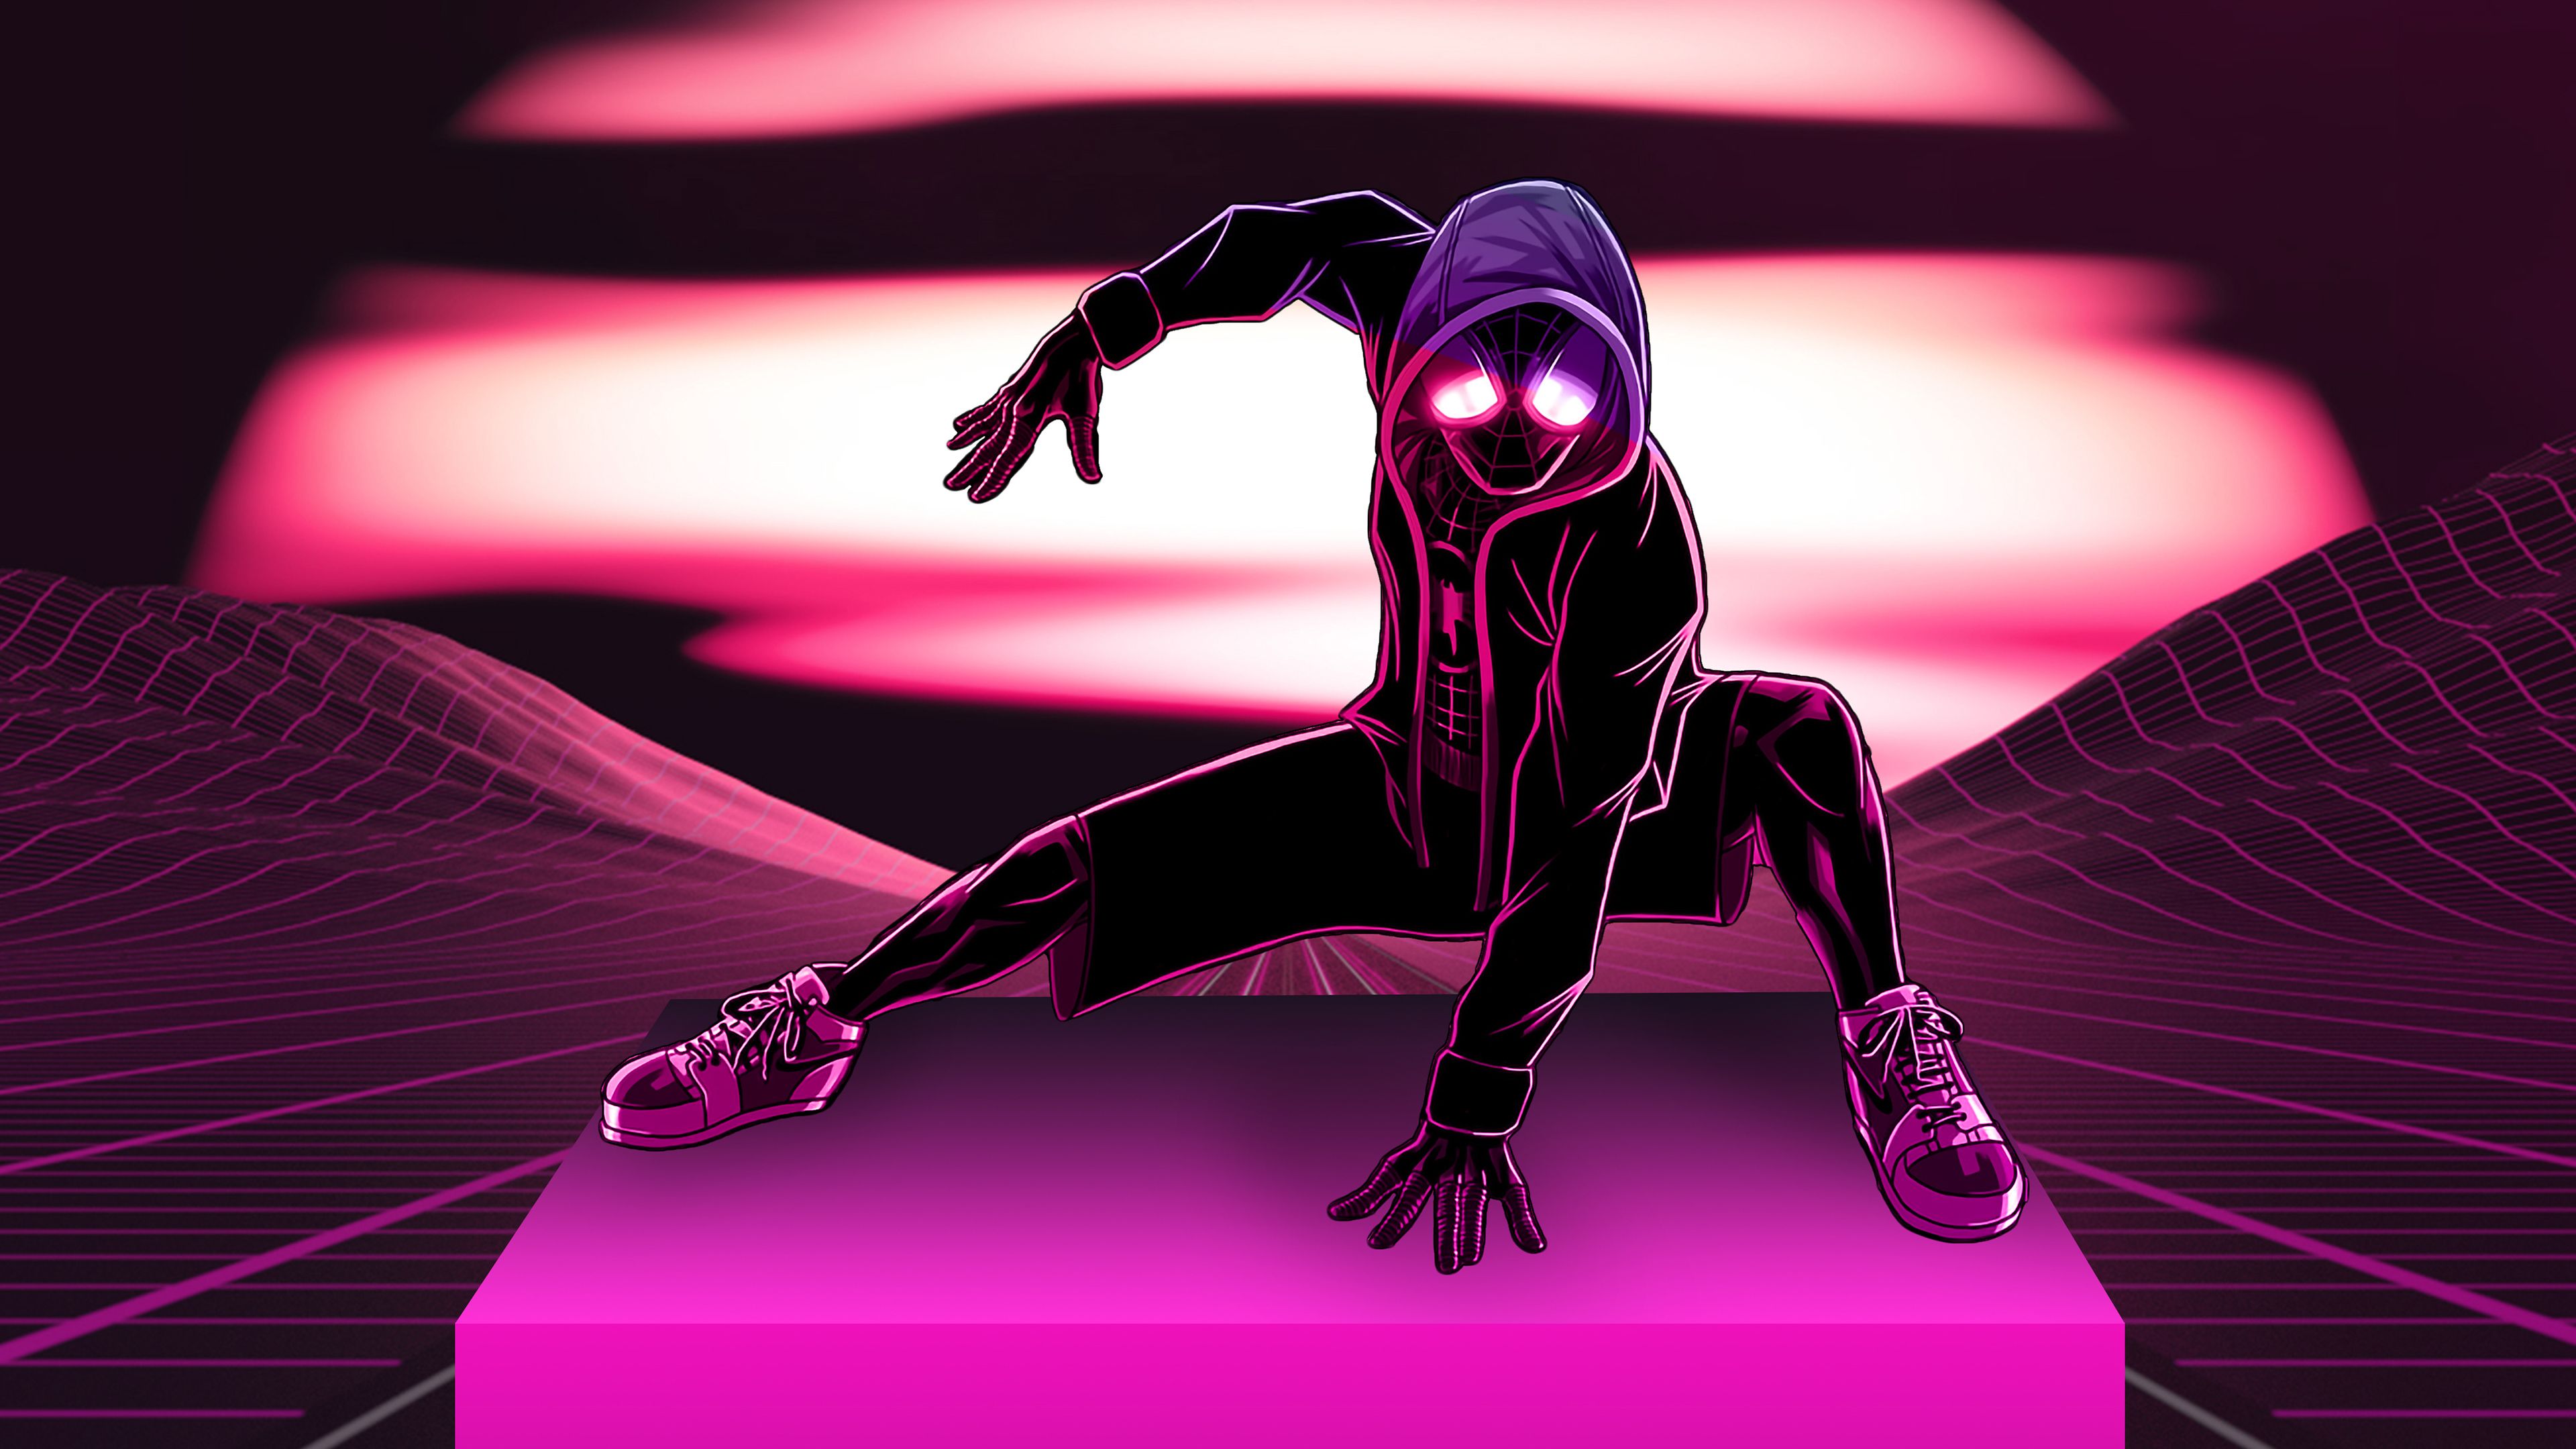 Wallpaper 4k Neon Spider Man Artist